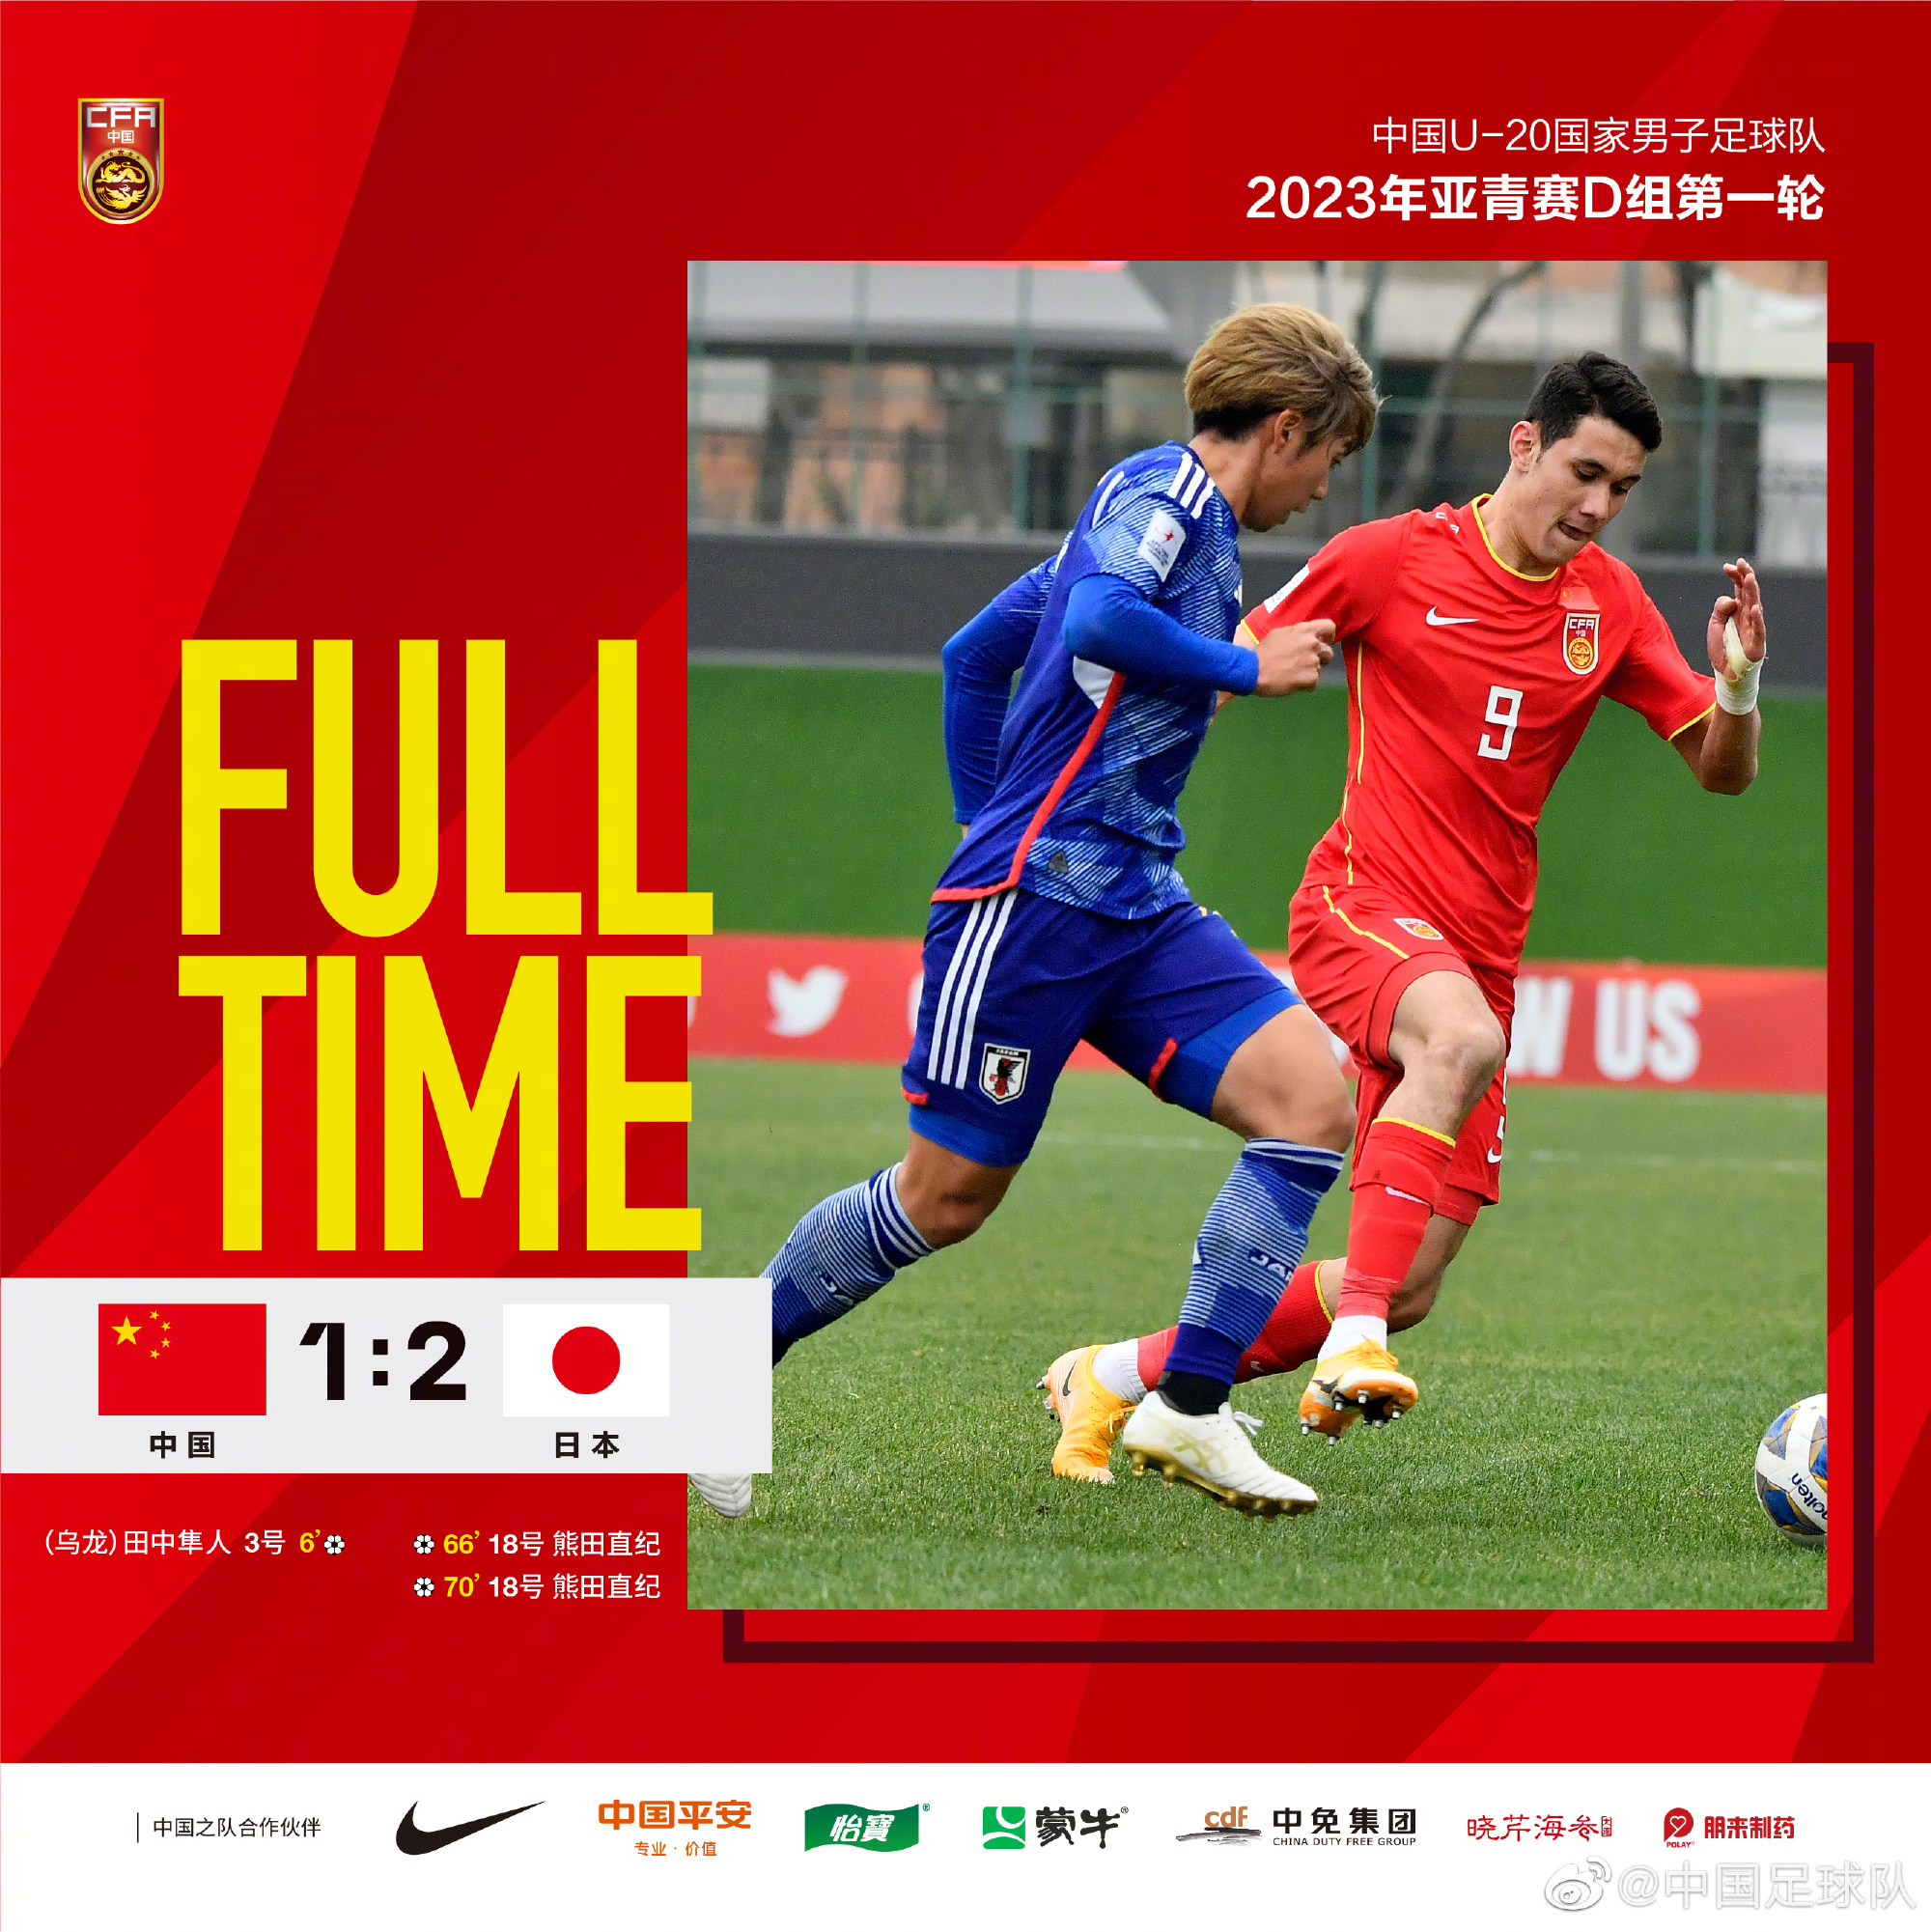 2023年U-20亚洲杯比赛中，中国队1:2负于日本队